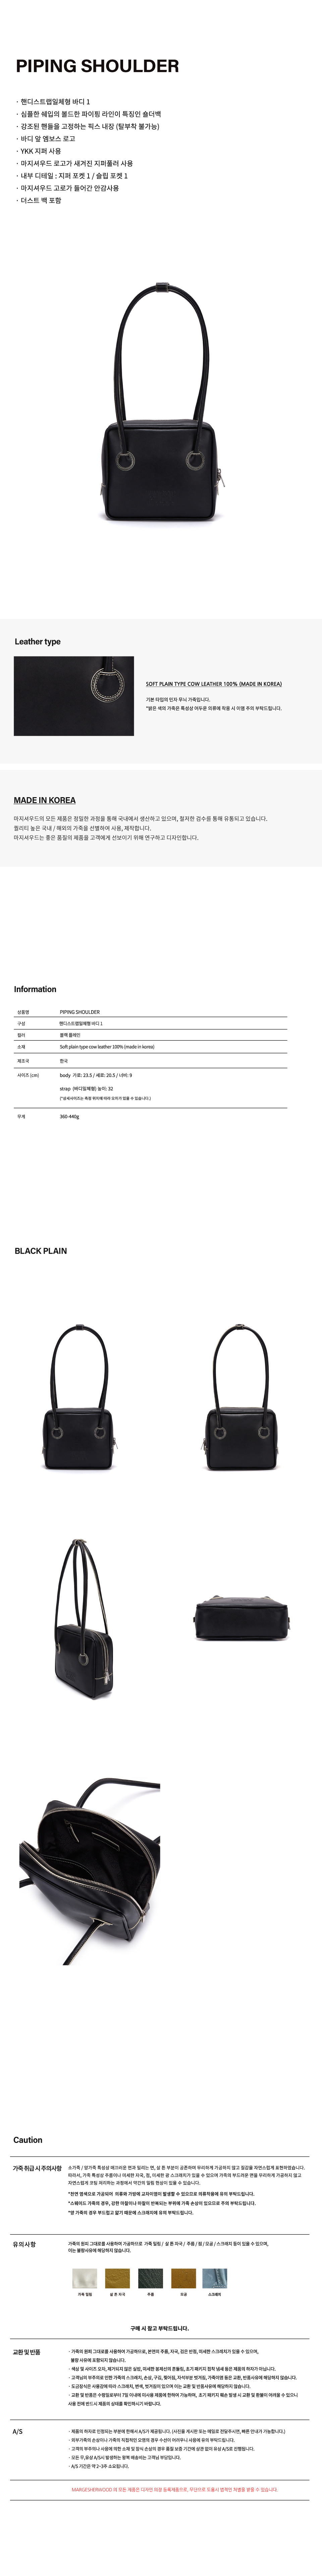 Piping Shoulder Bag_Black plain